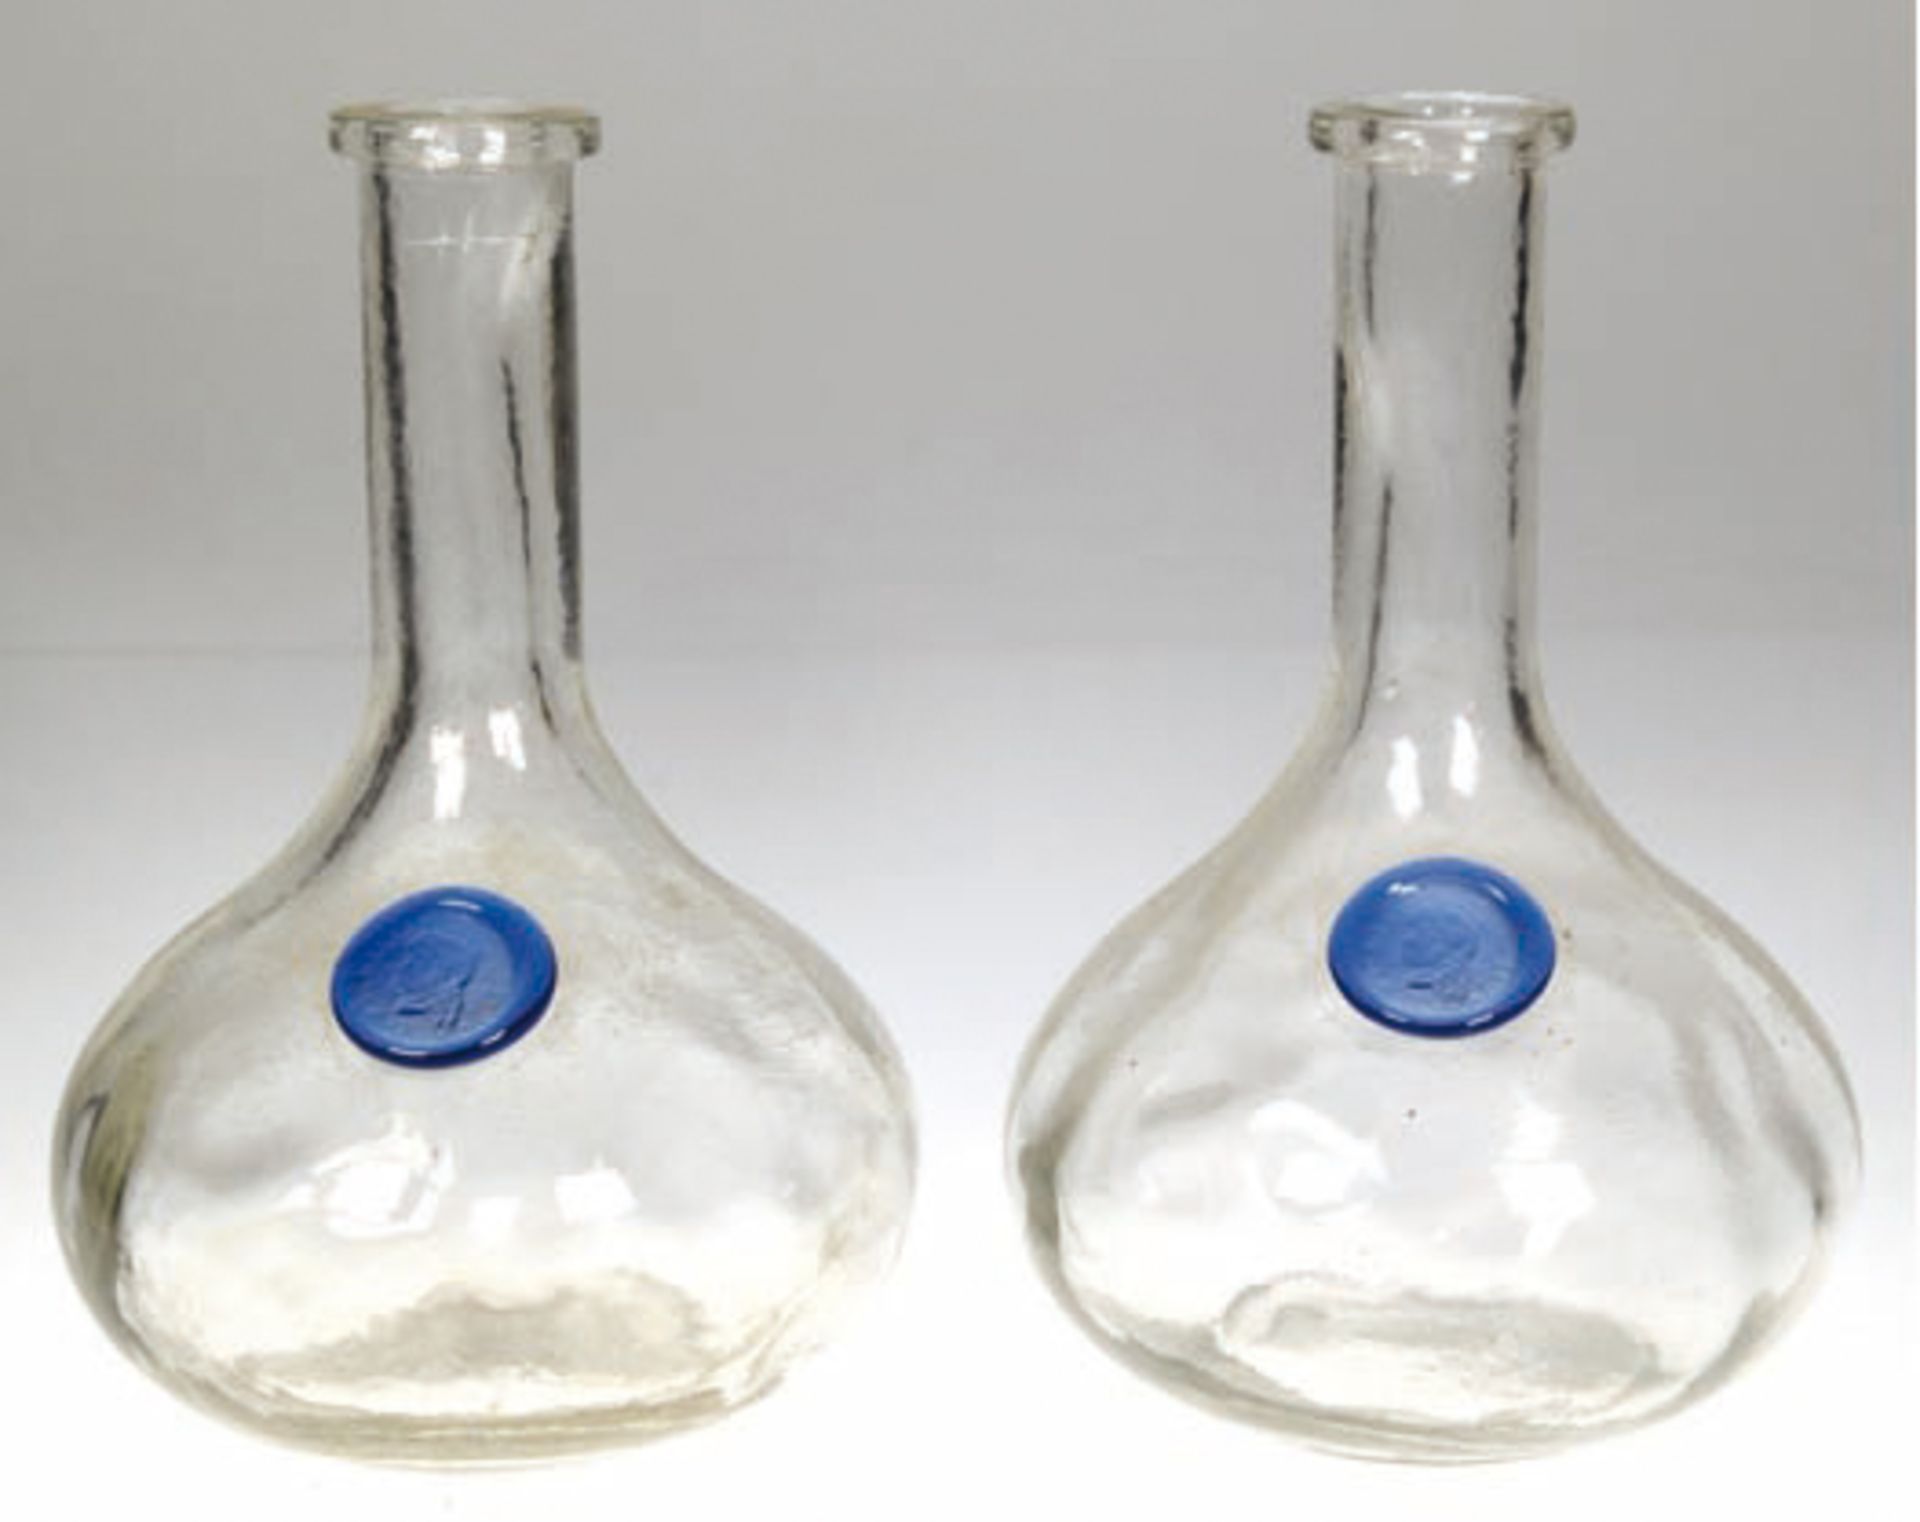 2 Vasen, farbloses Glas, gebauchte Form, mit blauem Siegel, Gebrauchspuren, H. 23 cm